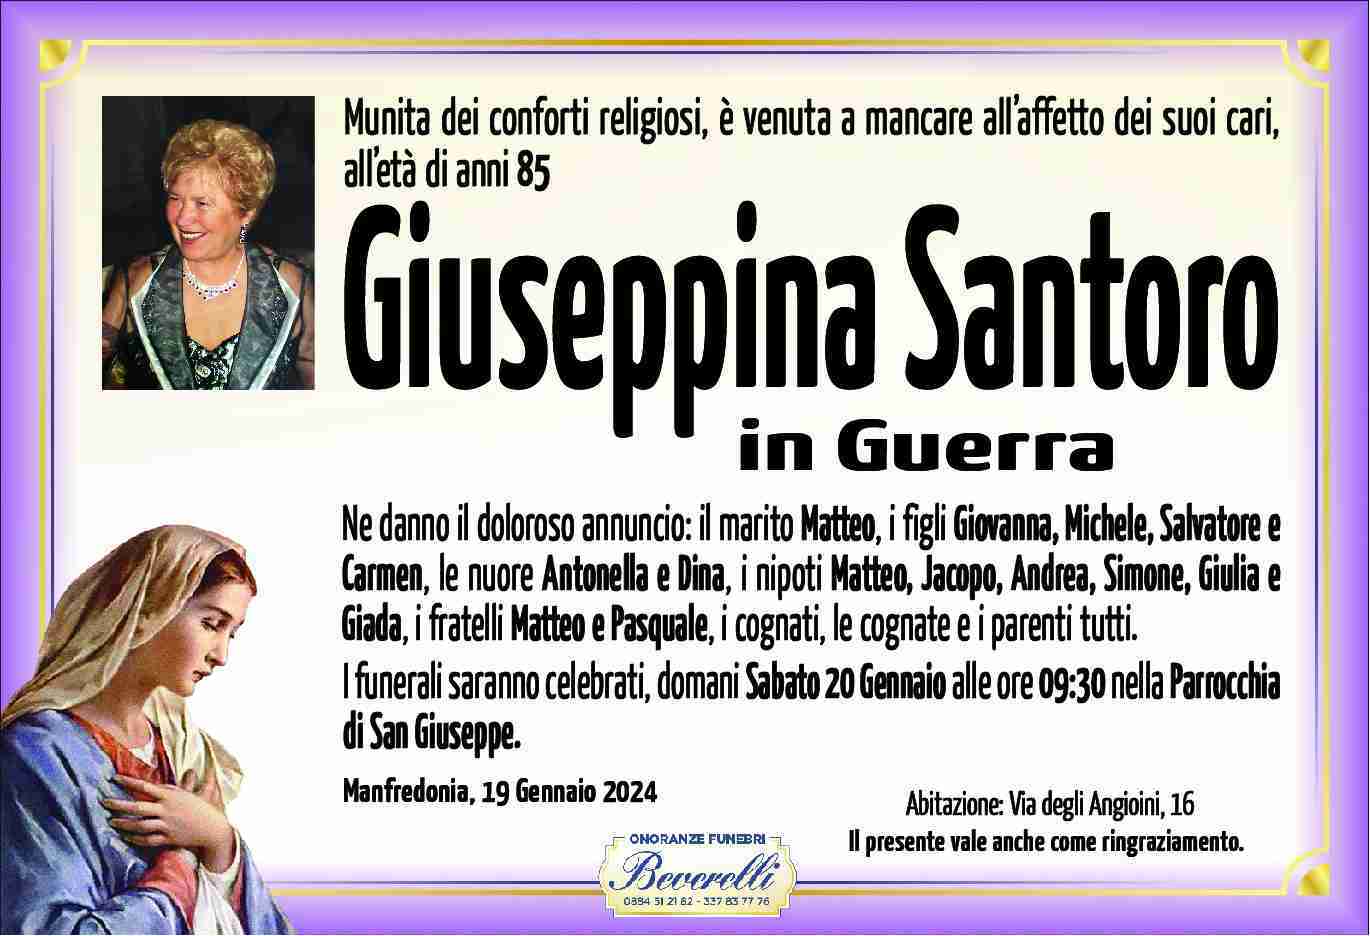 Giuseppina Santoro